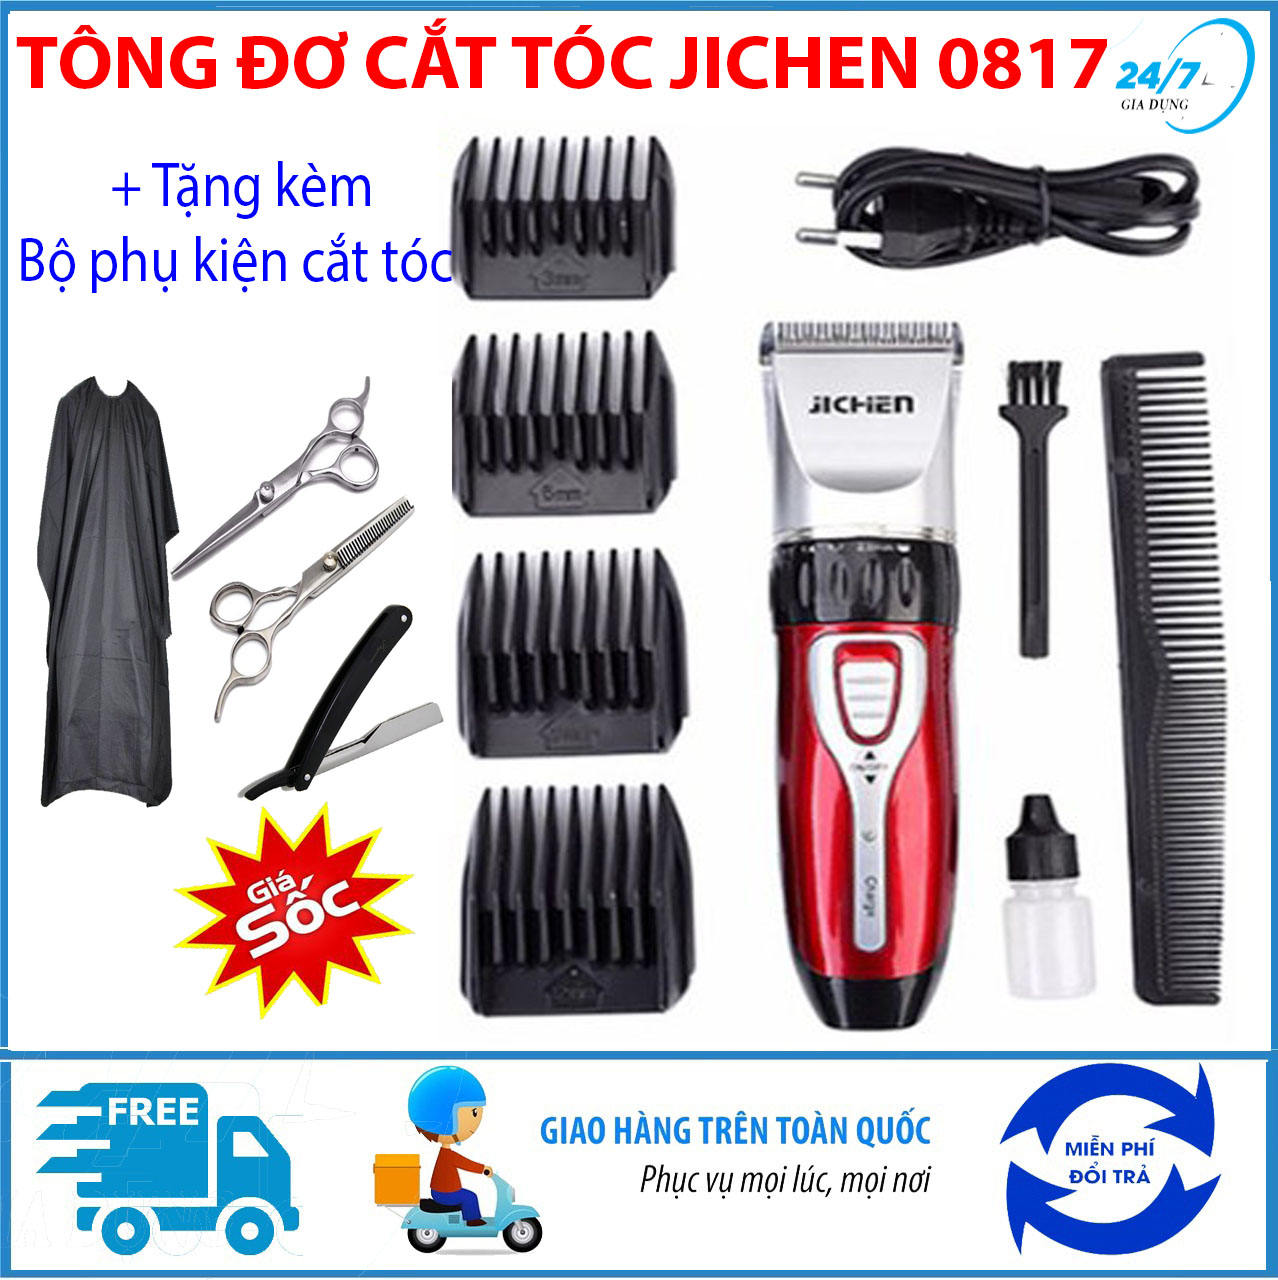 tang-bo-phu-kien-cat-toc-4-mon-tong-do-cat-toc-tre-em-jichen-0817-tong-do-cat-toc-chuyen-nghiepkhong-day-may-cat-toc-da-nang-tang-do-hot-toc-cho-be-an-toan-tien-loi-i1345007339-s5529914636.html-thumb0